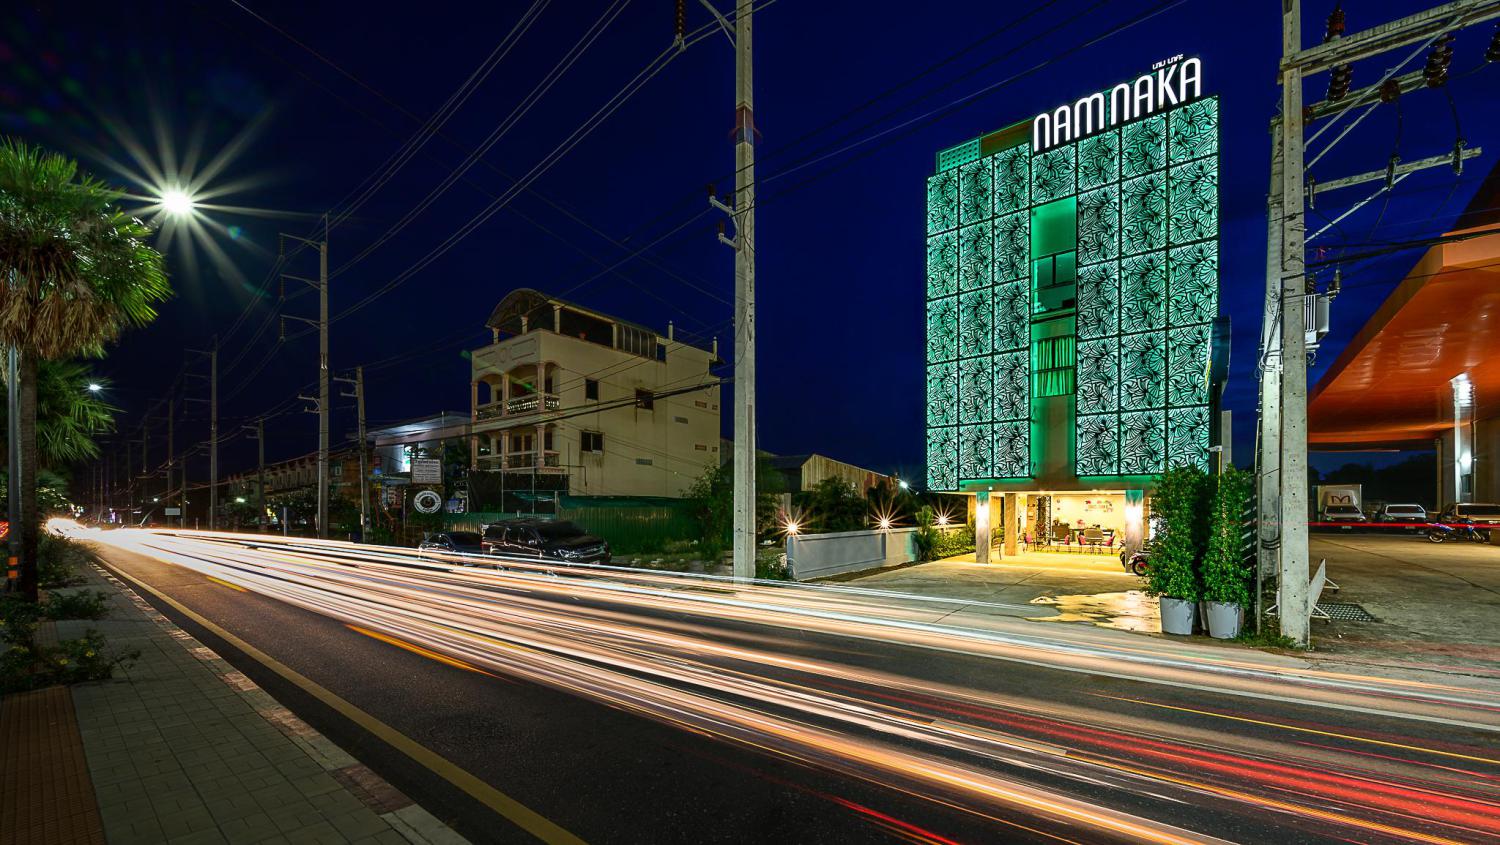 Nam Naka Boutique Hotel - Image 4